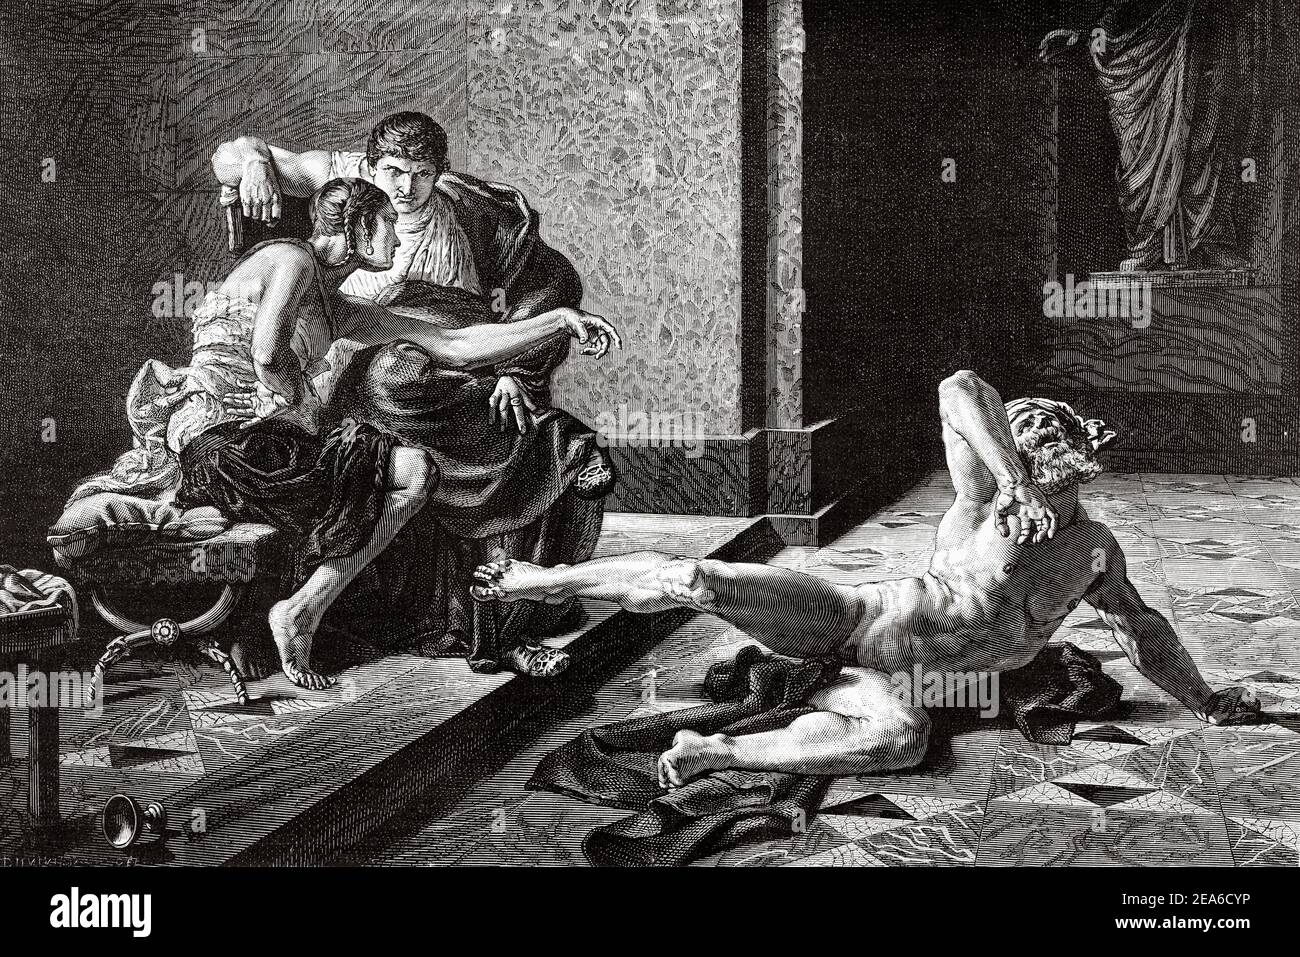 Nero et Locusta. Locusta était un esclave de la Rome antique, empoisonneur dans les services d'Agrippina, mère de Nero, elle a empoisonné Claudius et son fils Tiberio Claudio César Británico. Elle est considérée comme l'une des plus anciennes tueurs en série. Locusta a été condamné à mort par Galba. Histoire ancienne de Rome. Ancienne illustration gravée du XIXe siècle d'El Mundo Ilustrado 1879 Banque D'Images